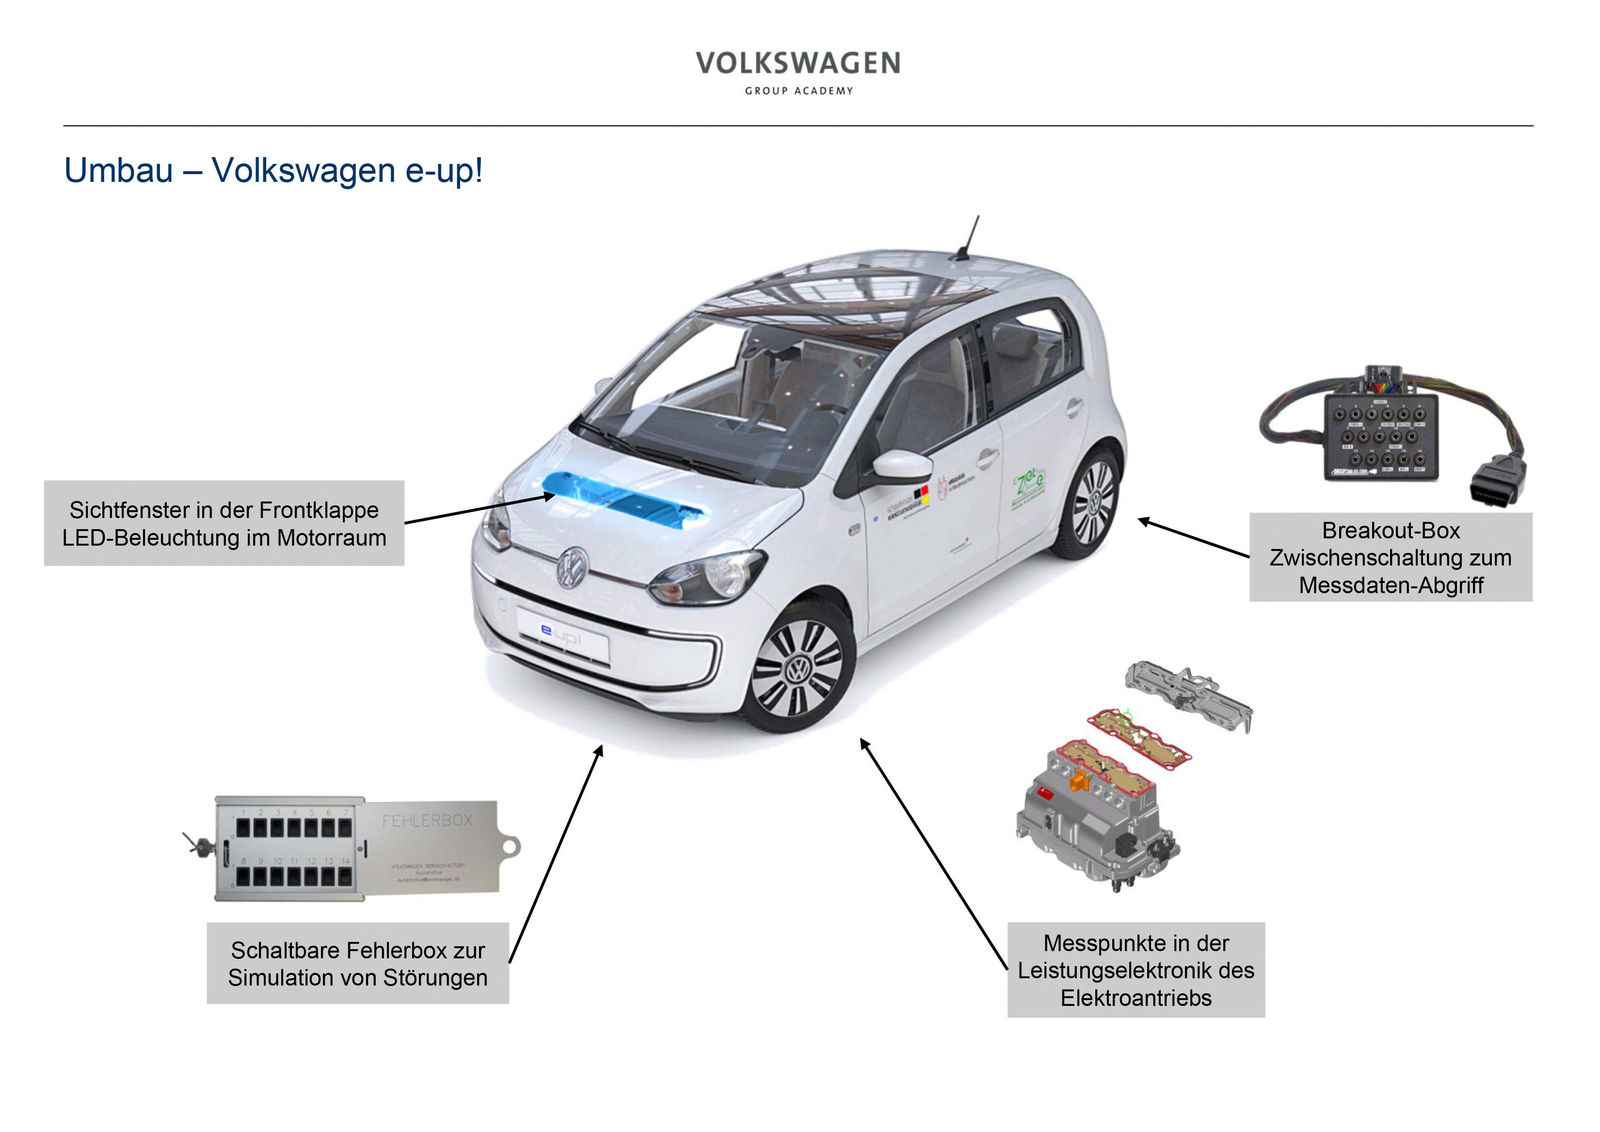 Volkswagen übergibt e-up! an Kultusministerin Heiligenstadt als  Schulungsauto für Berufsschulen